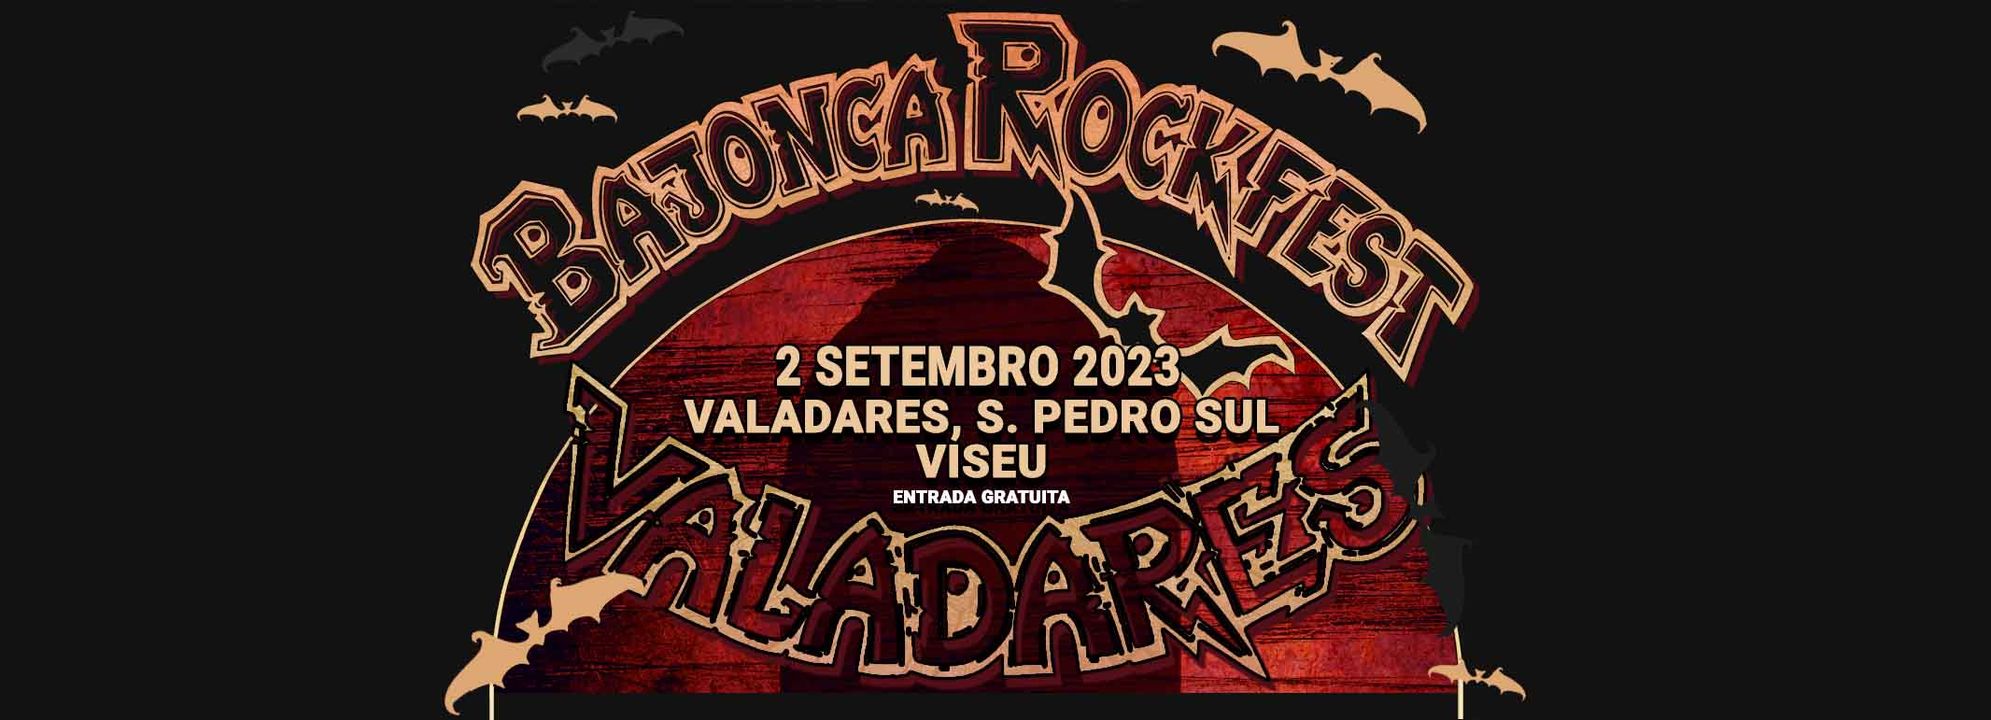 Bajonca Rock Fest 2023